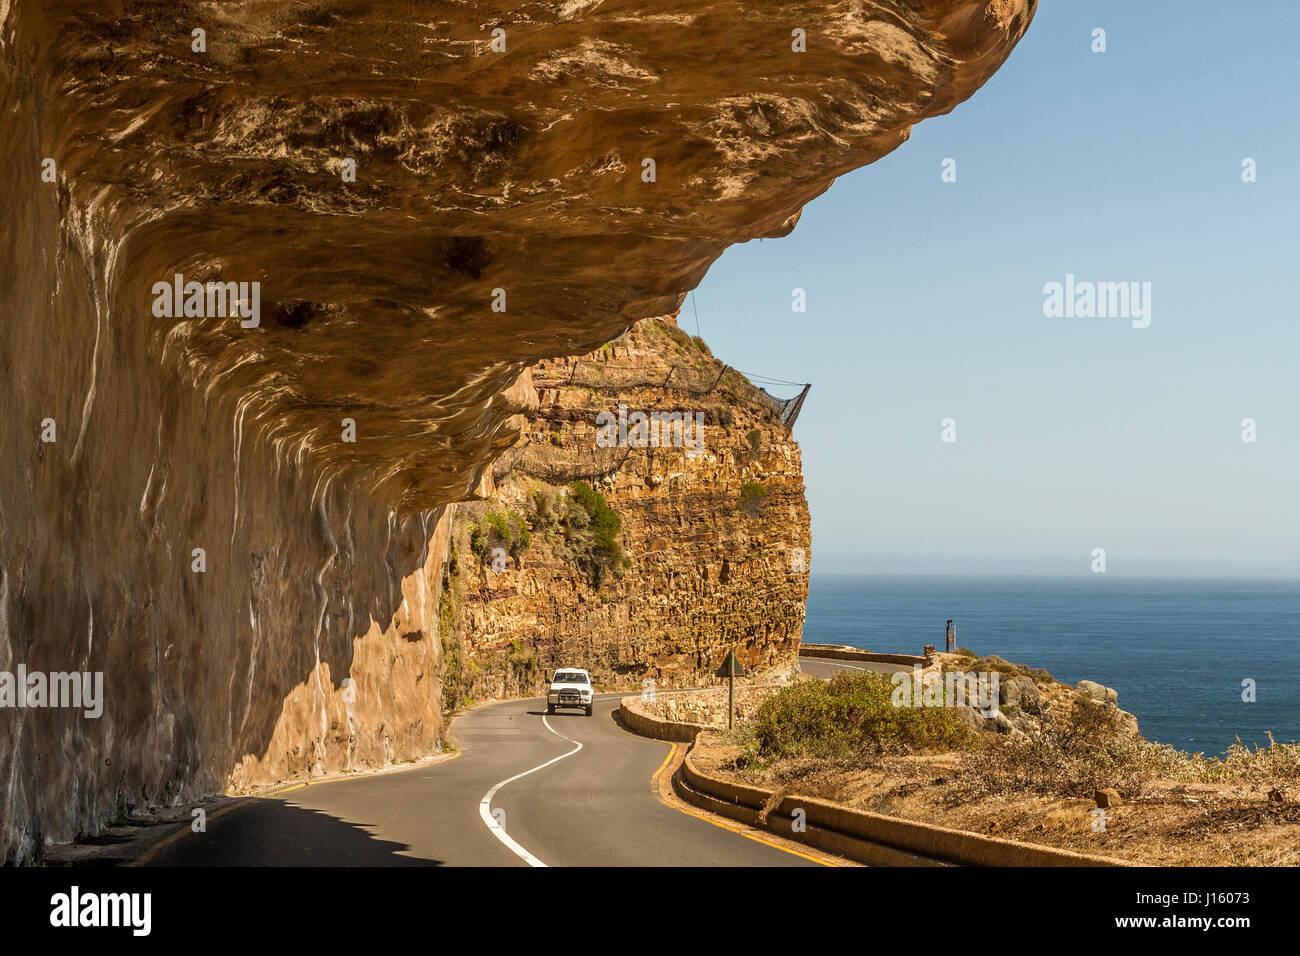 Une voiture conduit le long de falaises en surplomb de la Chapman's Peak Drive, une route panoramique spectaculaire de l'océan près de Cape Town Afrique du Sud Banque D'Images